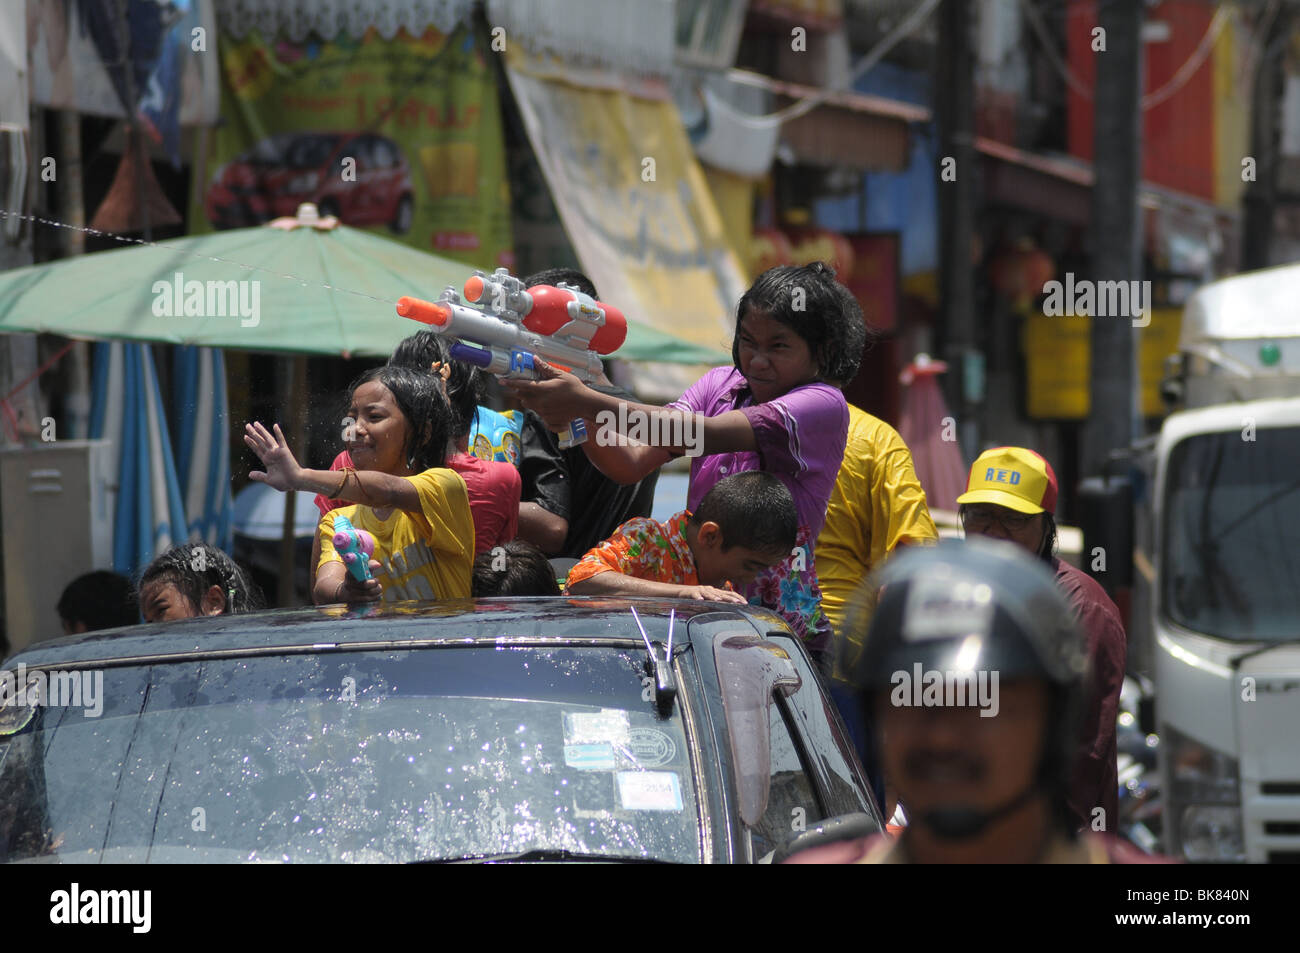 Girl firing water pistol in back of truck during the Thai Songkran Festival Stock Photo